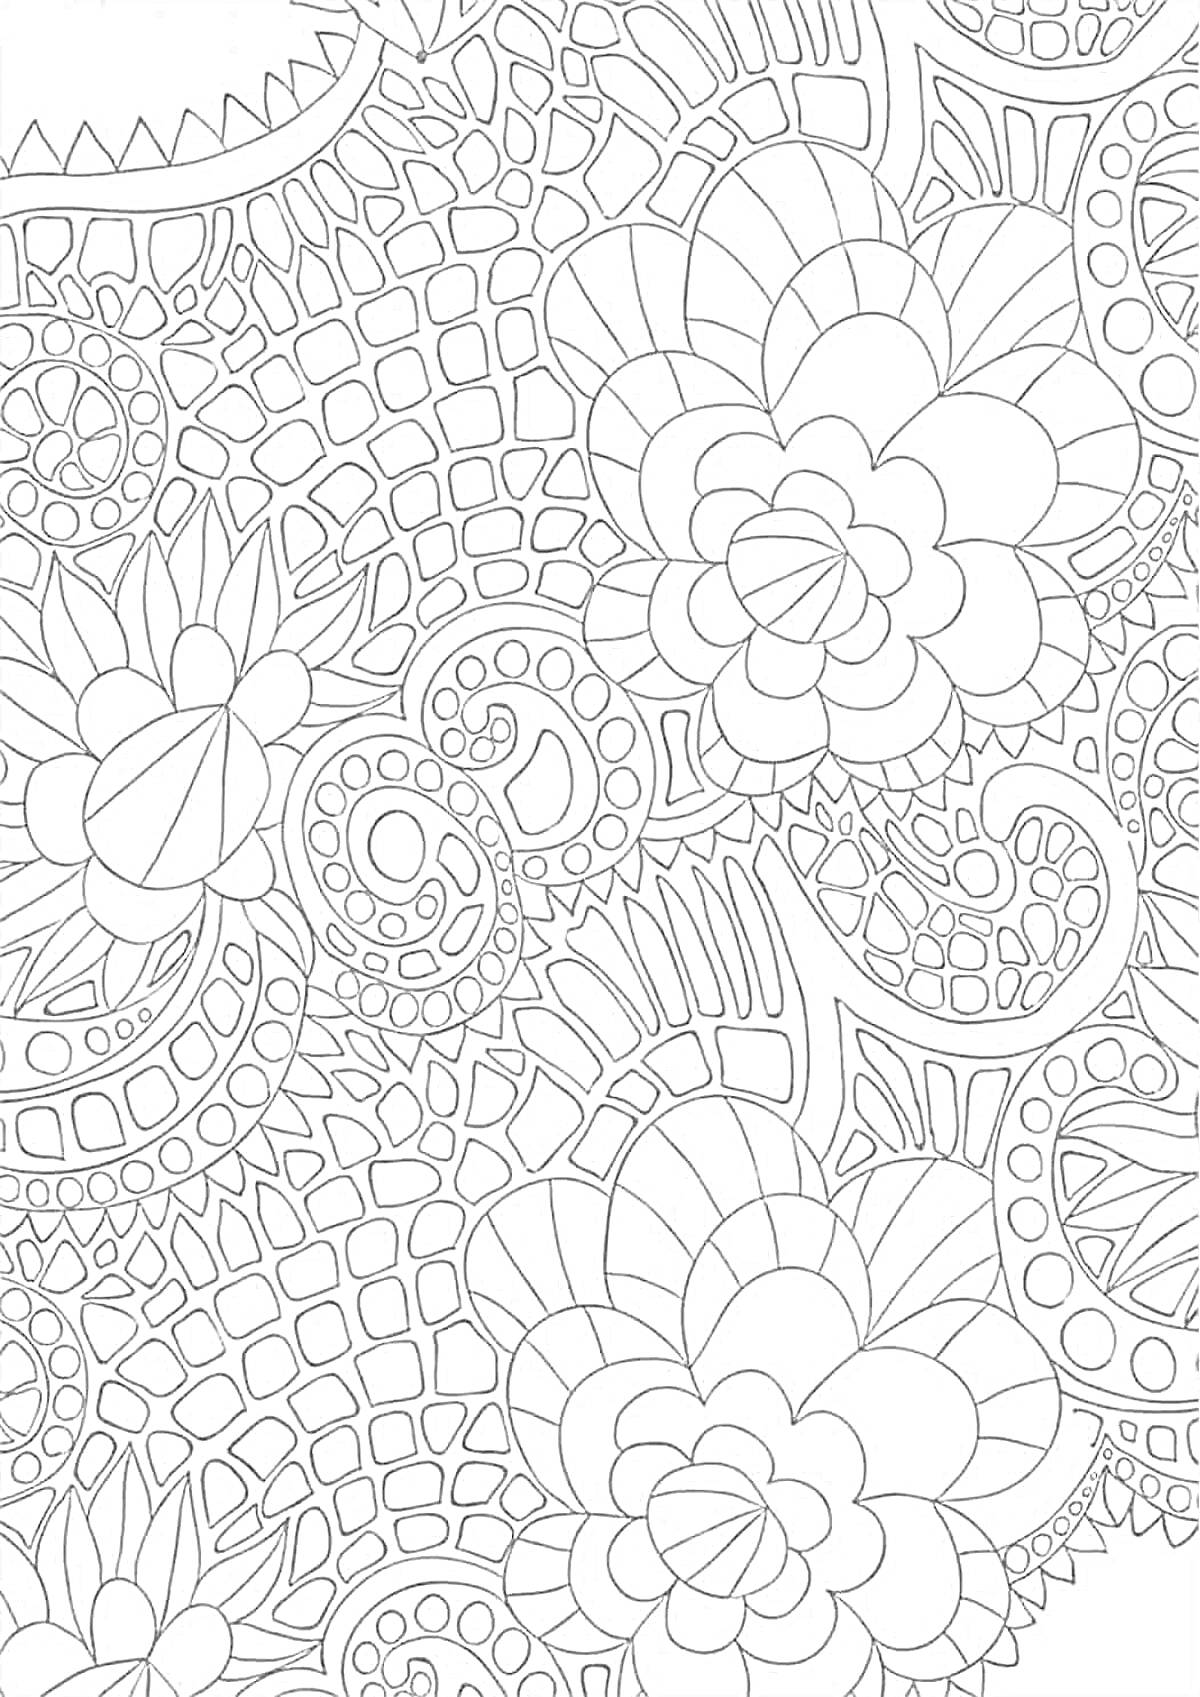 РаскраскаАбстрактный узор с цветами и геометрическими фигурами